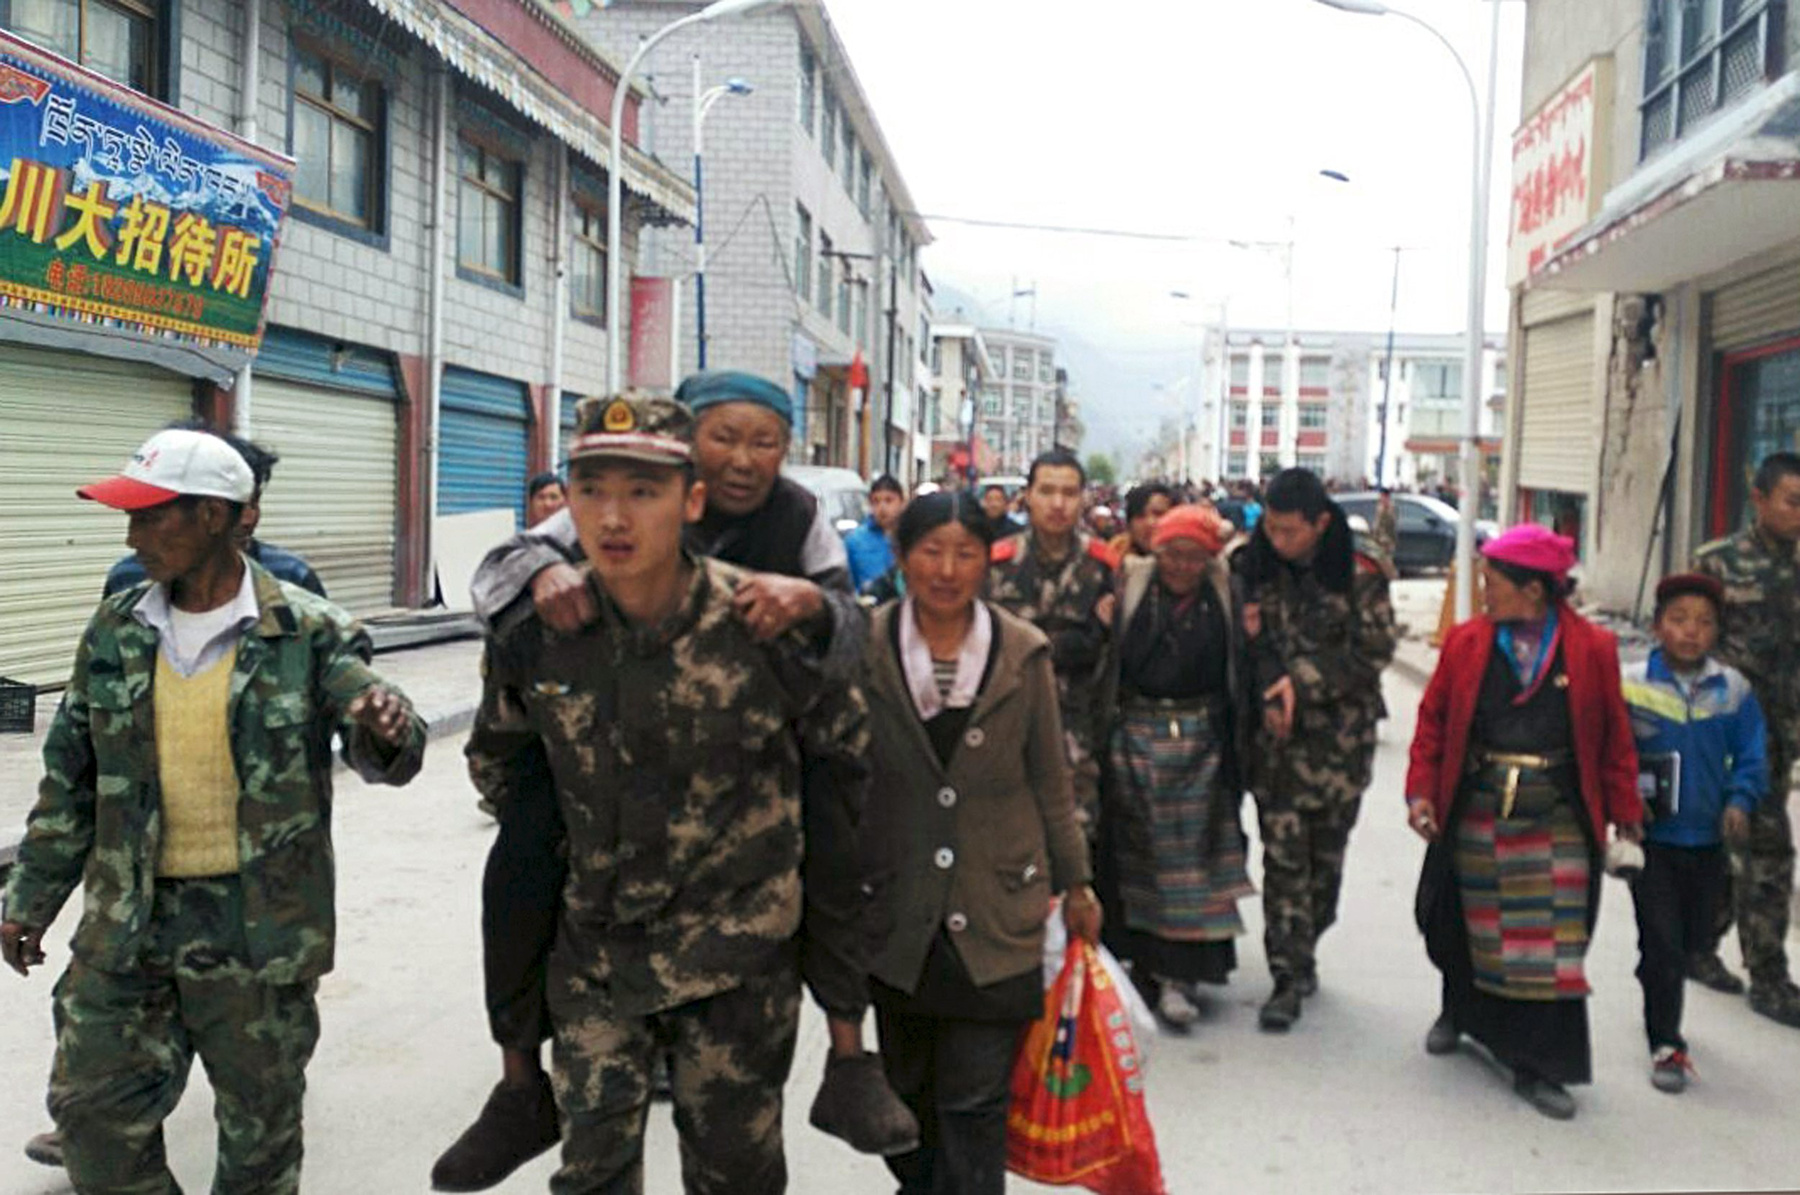 Ugyanazt a nőt cipeli egy másik kínai katona a városban. A kép vasárnap 12:30-kor jelent meg.